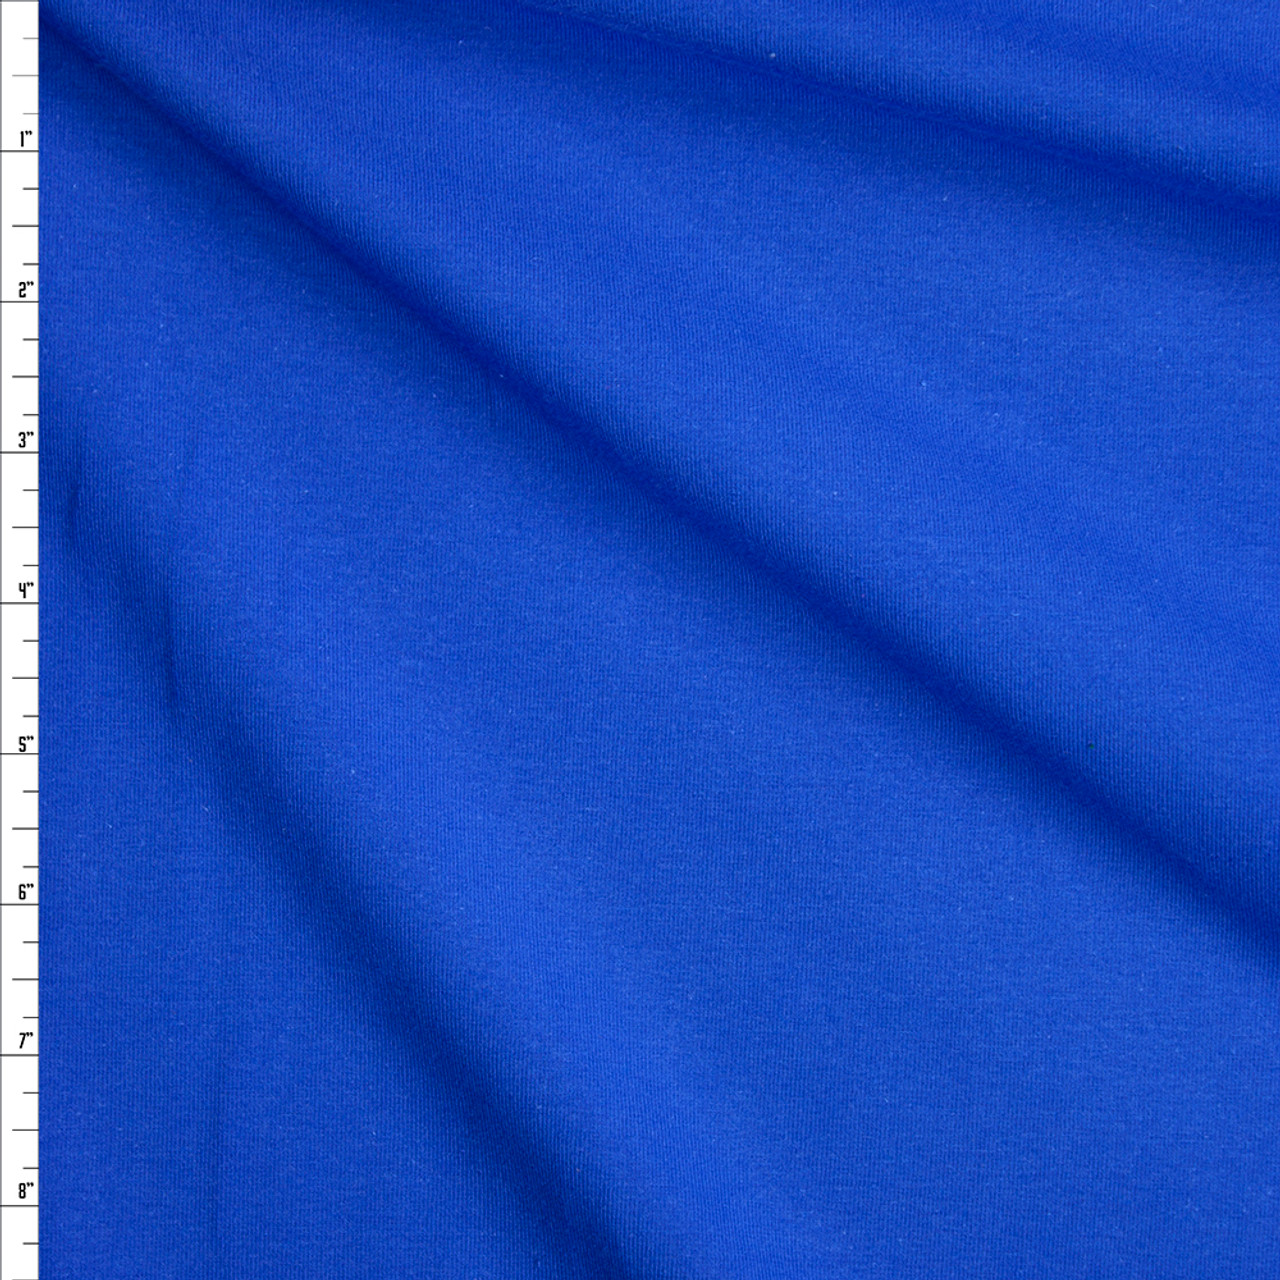 royal blue jersey knit fabric